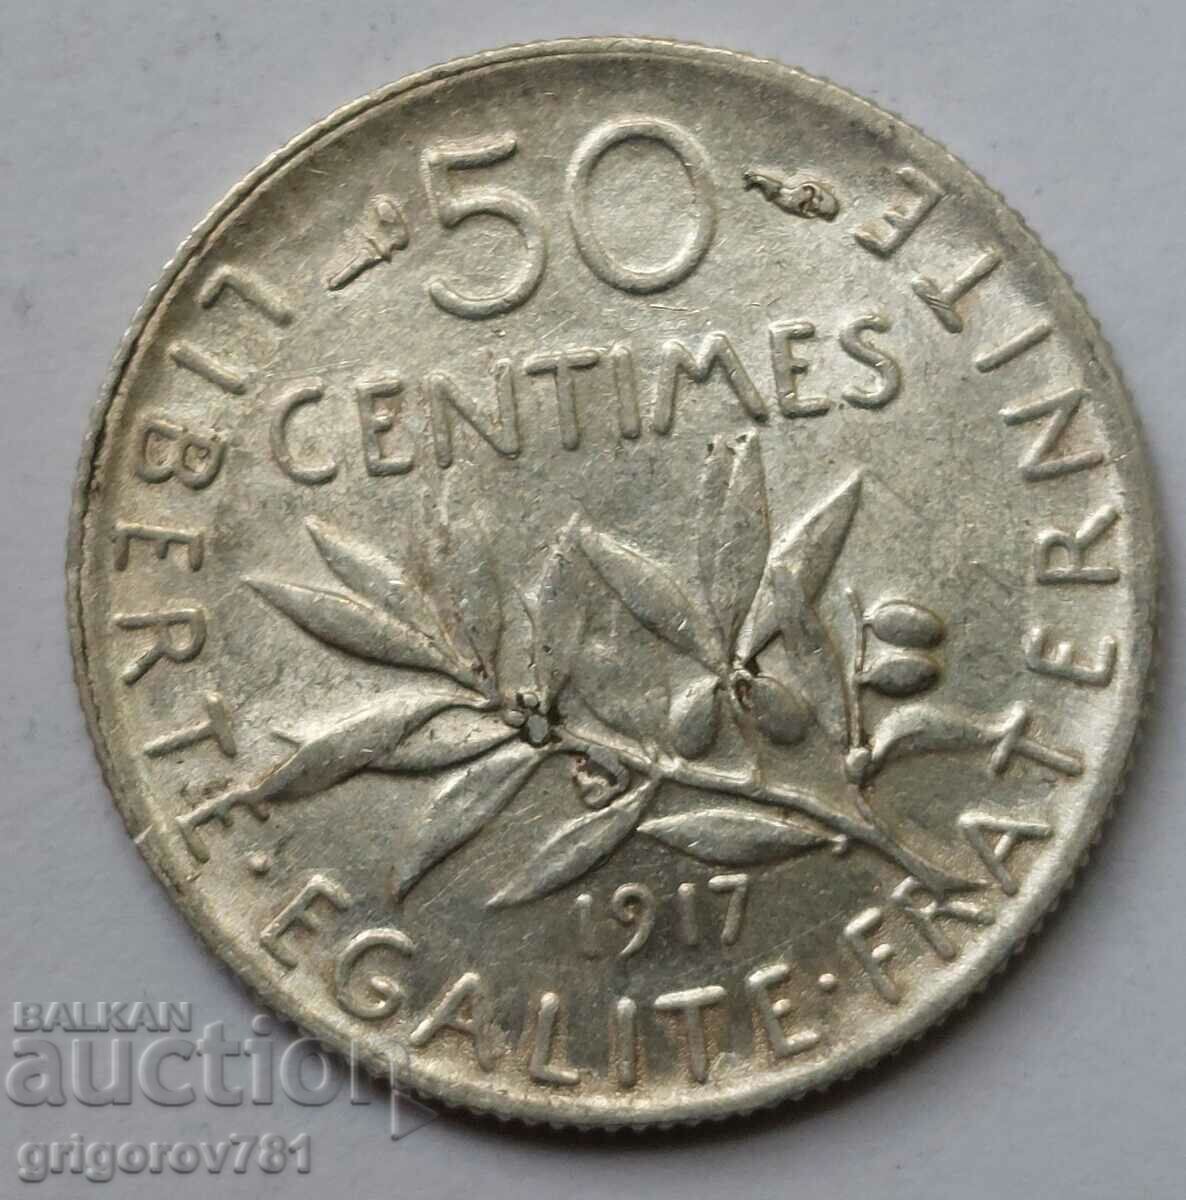 Ασημένιο 50 εκατοστά Γαλλία 1917 - ασημένιο νόμισμα #25